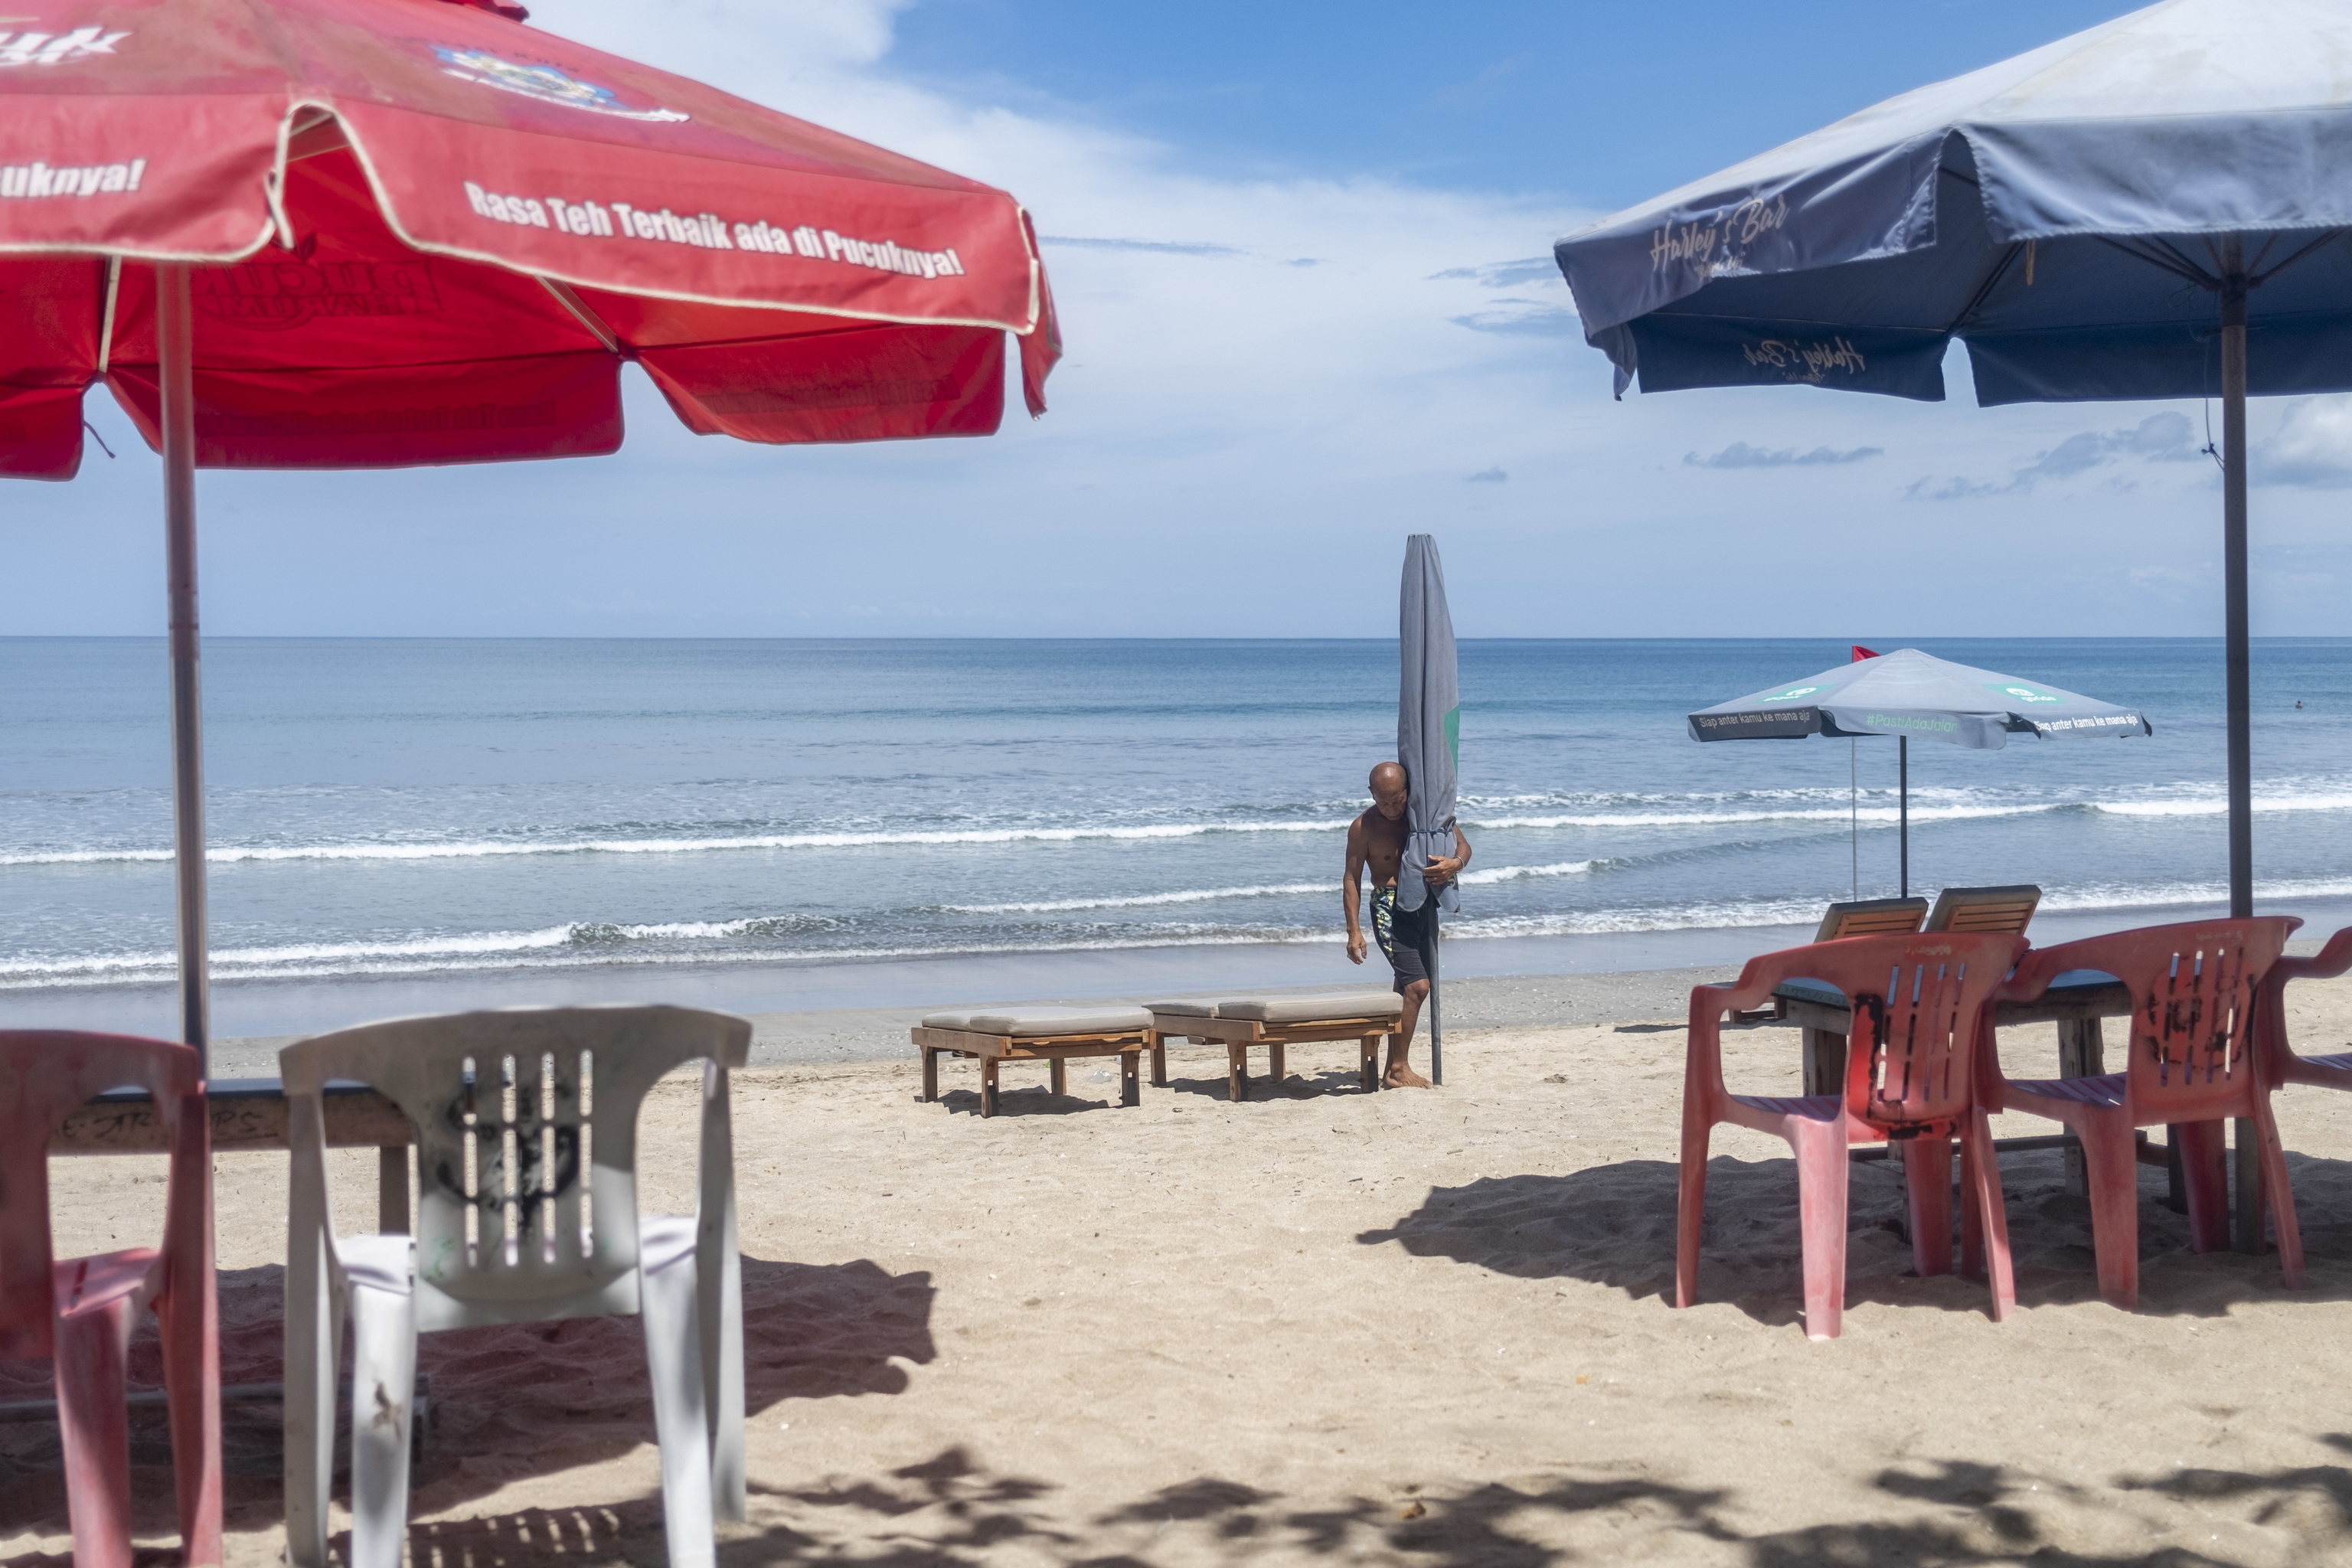 Un hombre arregla los asientos para los turistas en una playa de Kuta, Bali, Indonesia, el 11 de marzo de 2022. El gobierno indonesio puso en marcha el 7 de marzo una prueba de entrada sin cuarentena para los pasajeros internacionales que lleguen a Bali. En el marco del programa de prueba, se pretende levantar todas las normas de cuarentena para abril de 2022.